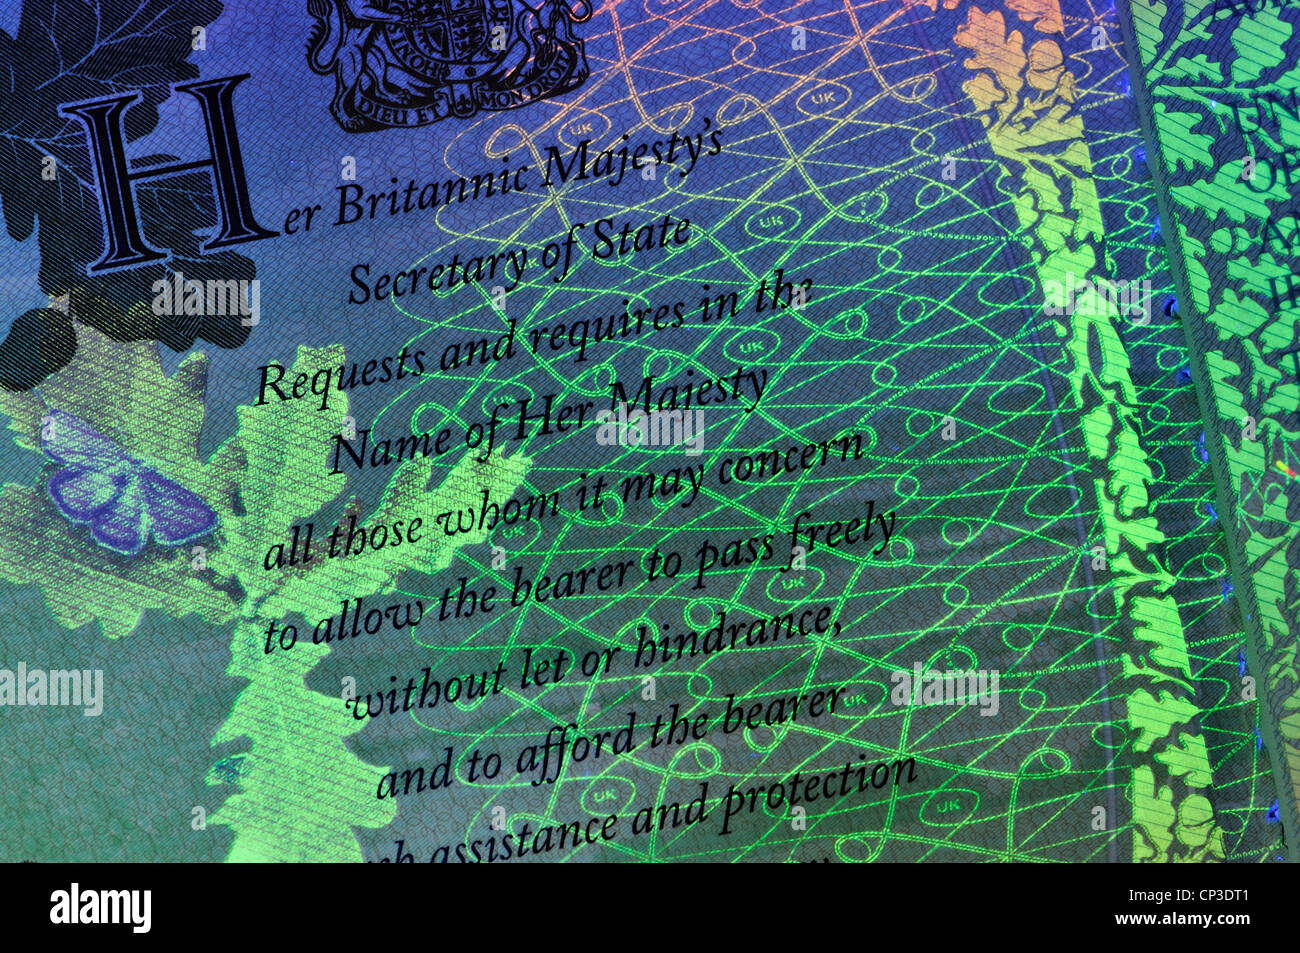 Page de passeport britannique photographié sous la lumière ultraviolette, révélant des éléments de sécurité invisible autrement Banque D'Images